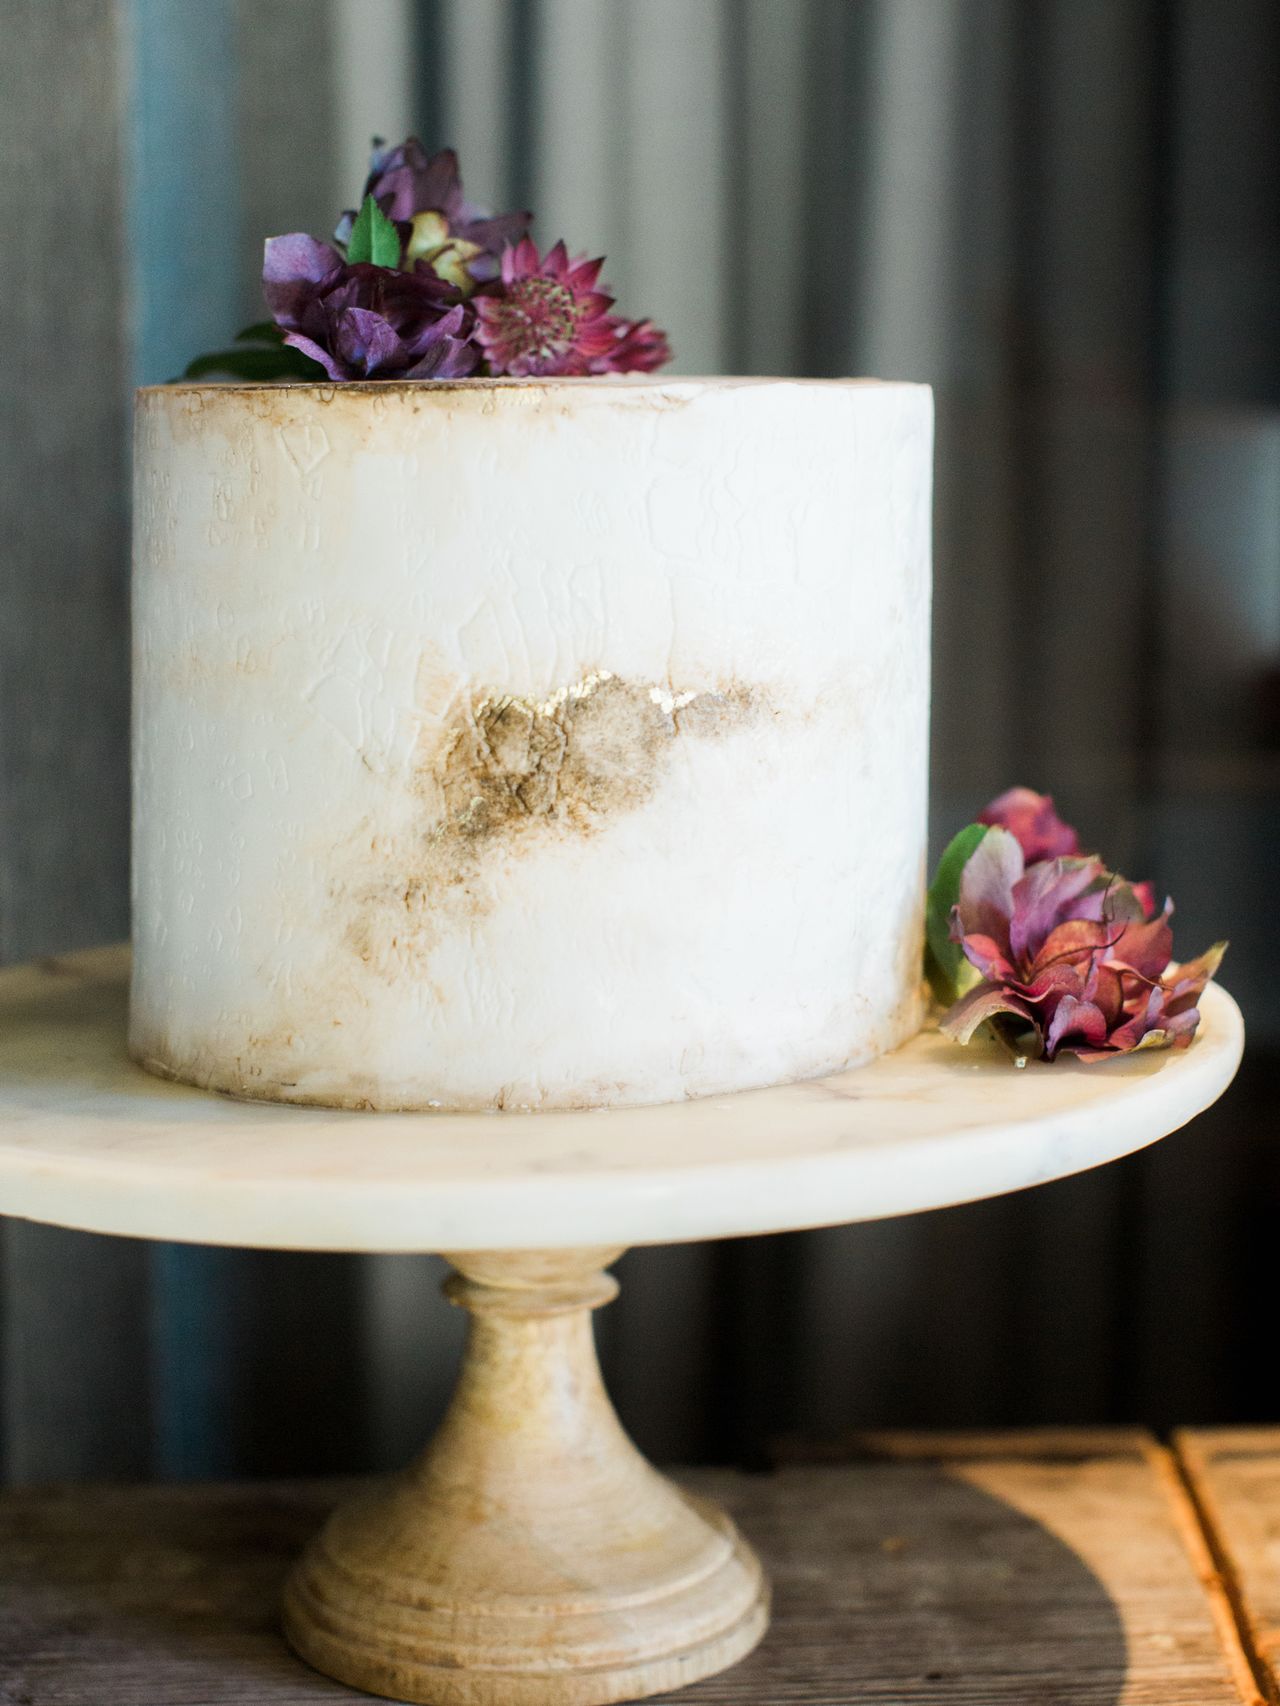 Тенденции свадебного торта 2019 года